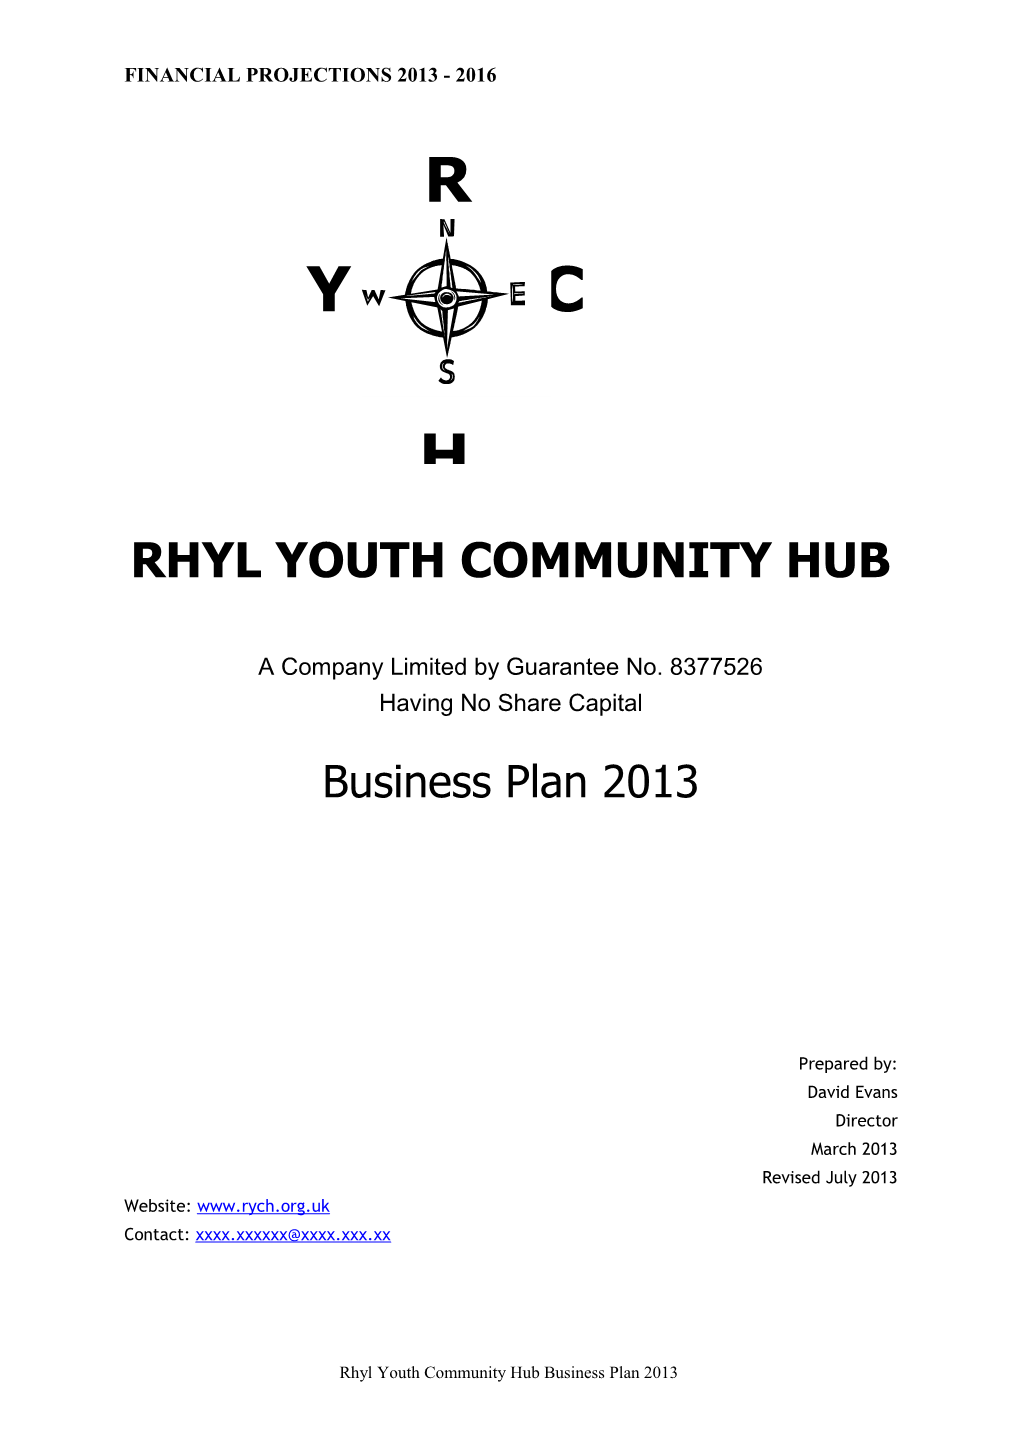 Rhyl Youth Community Hub